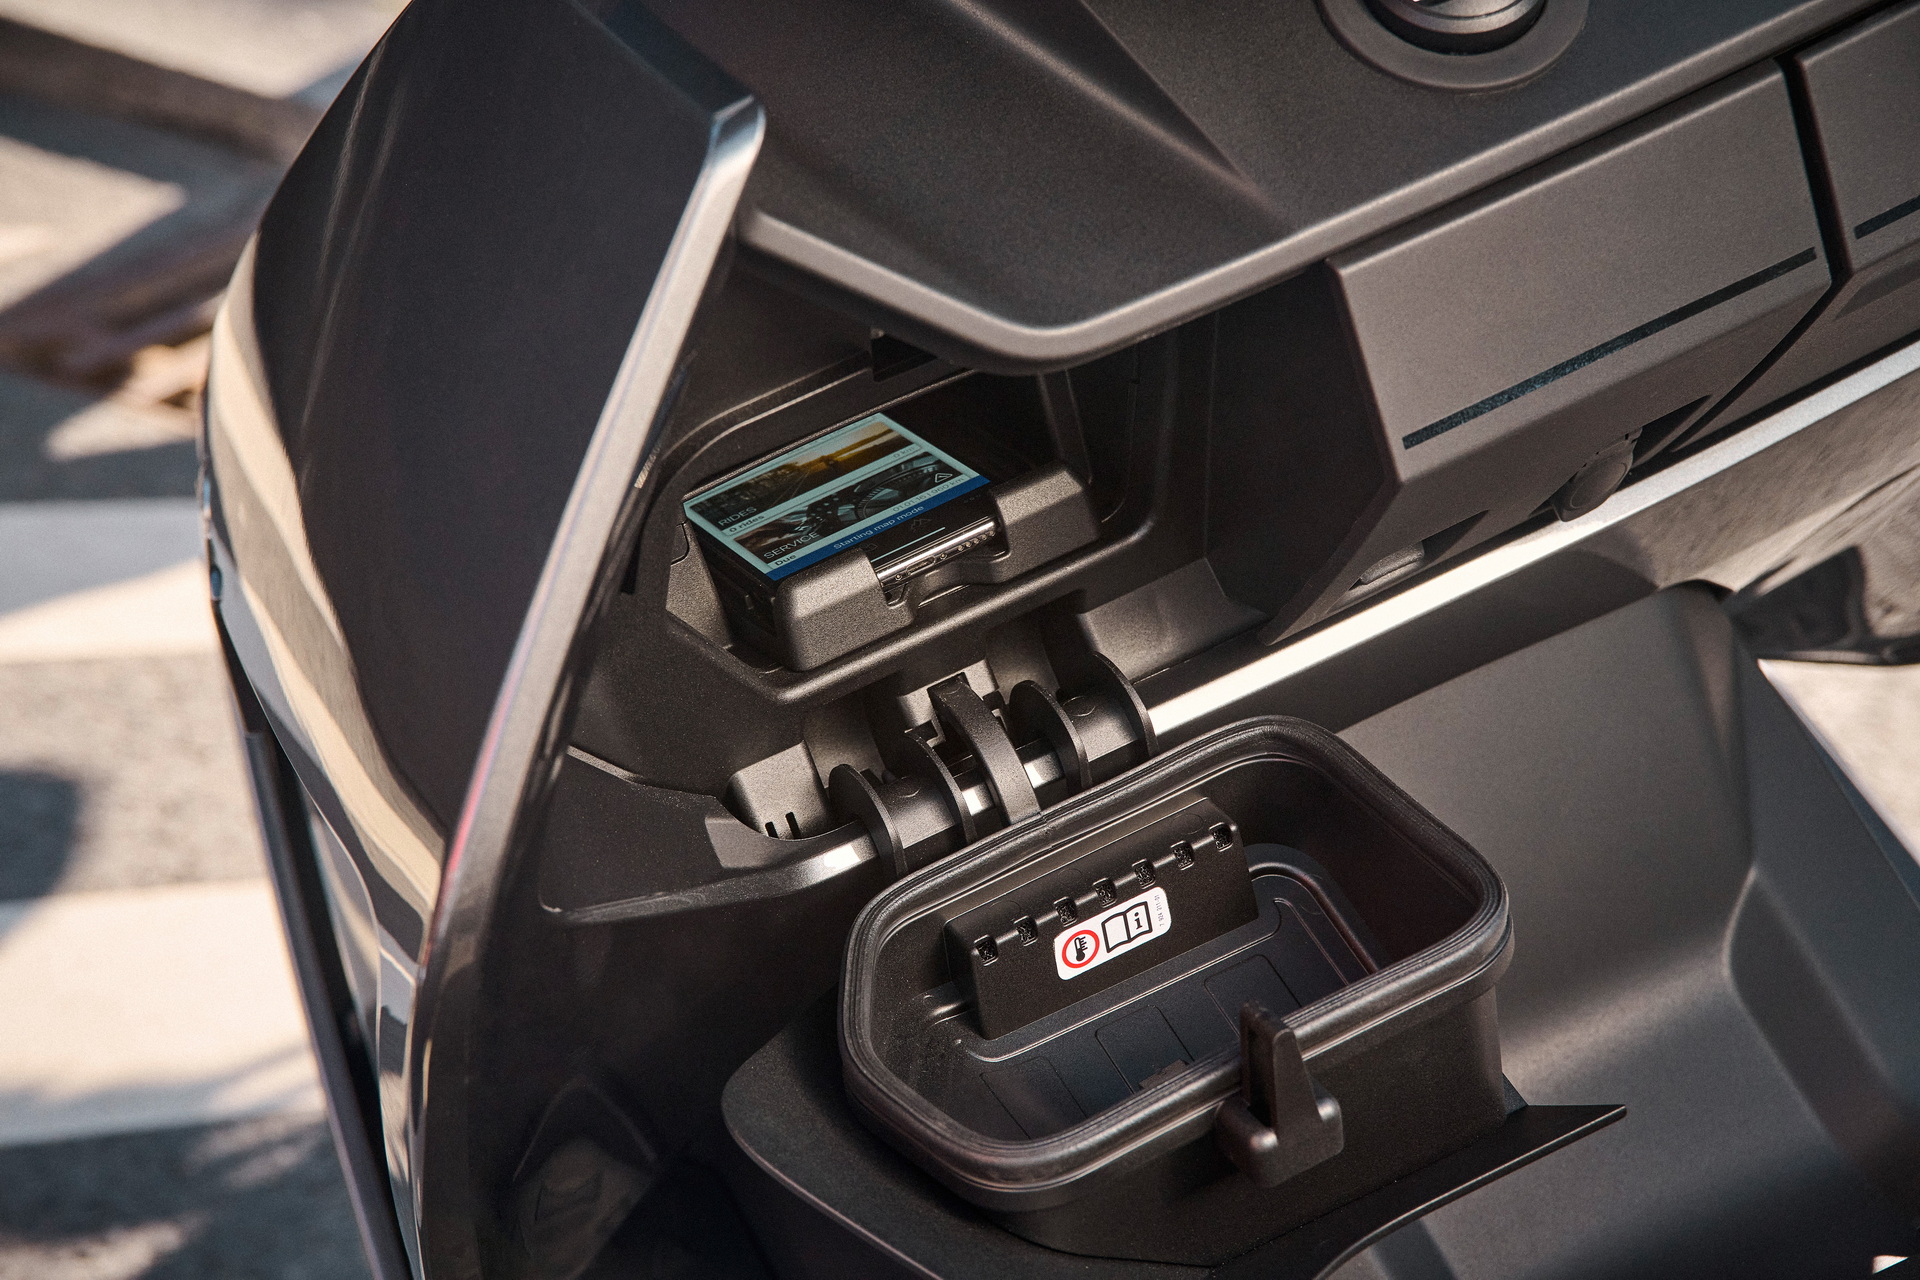 BMW'nin elektrikli motosikleti CE 04 tanıtıldı: İşte özellikleri ve fiyatı